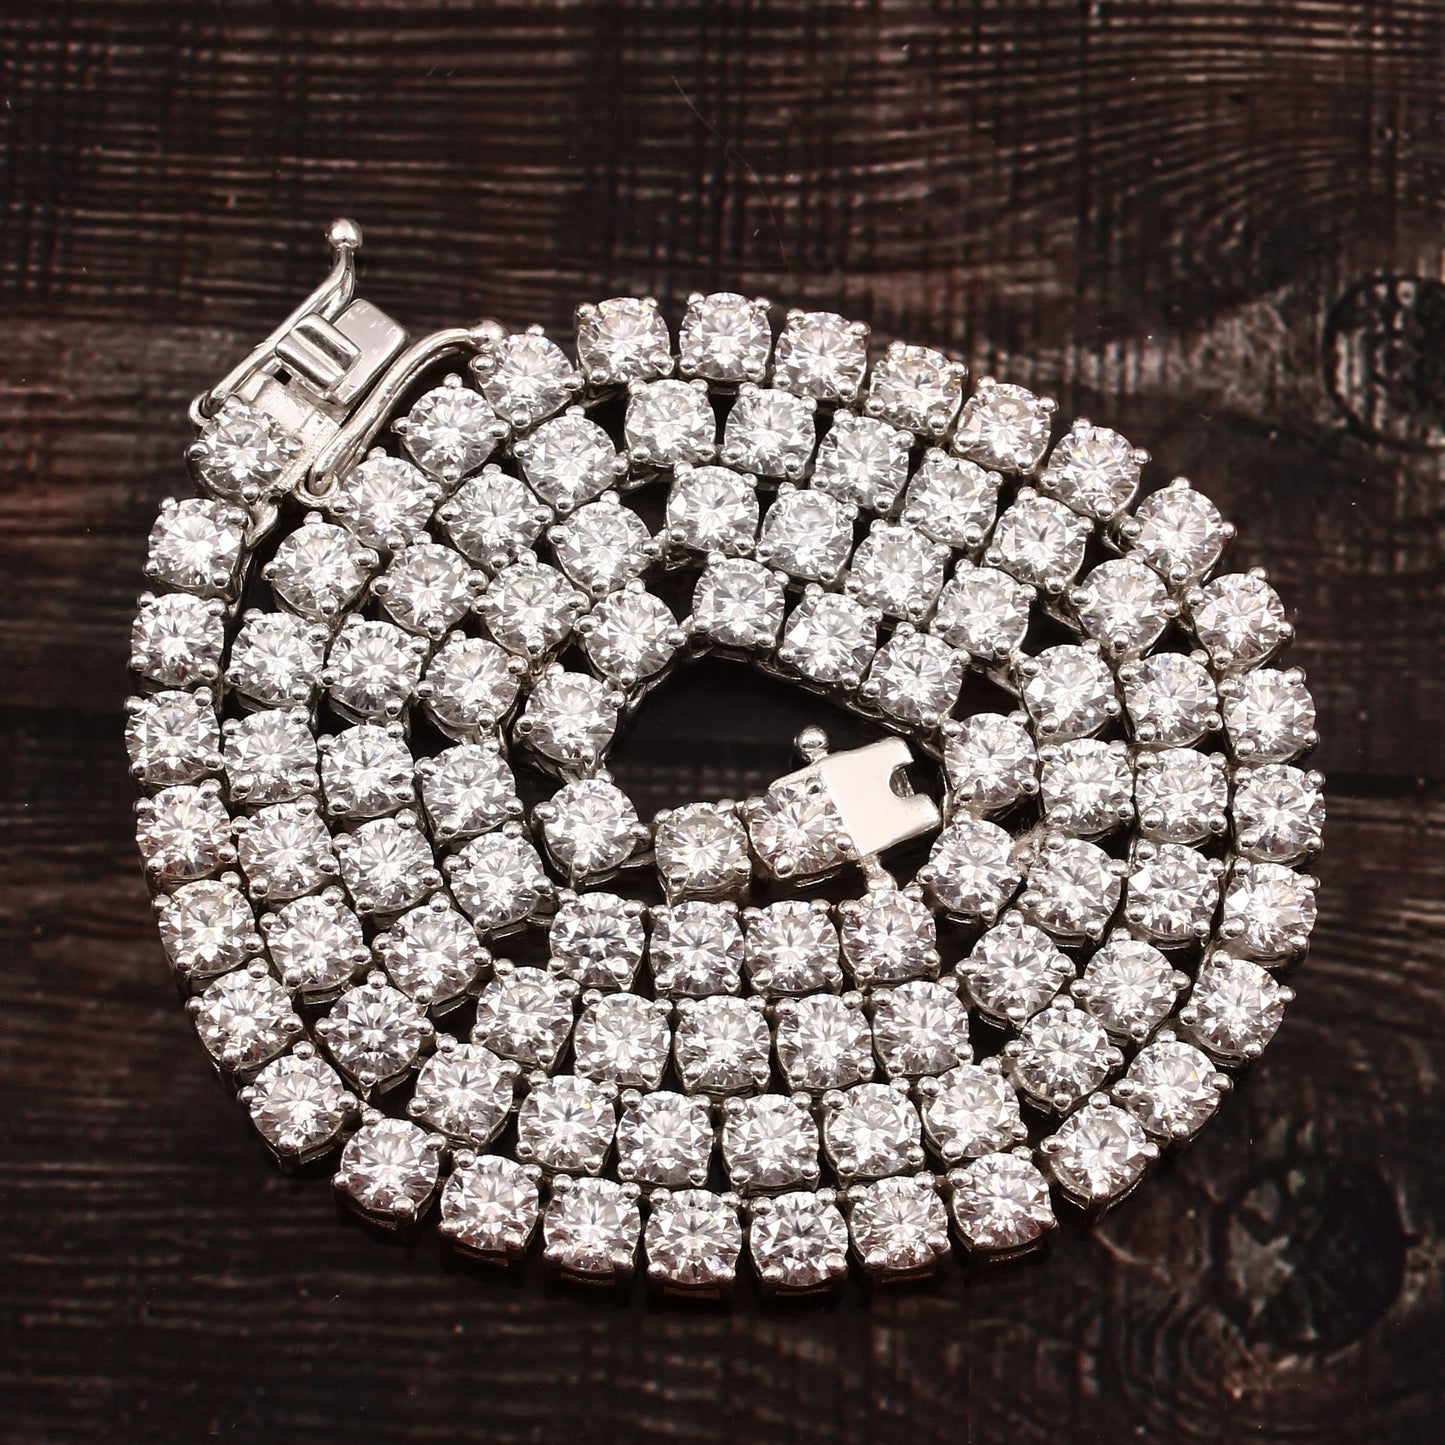 Lab Diamond Tennis Necklace - 2.5 MM round lab diamonds